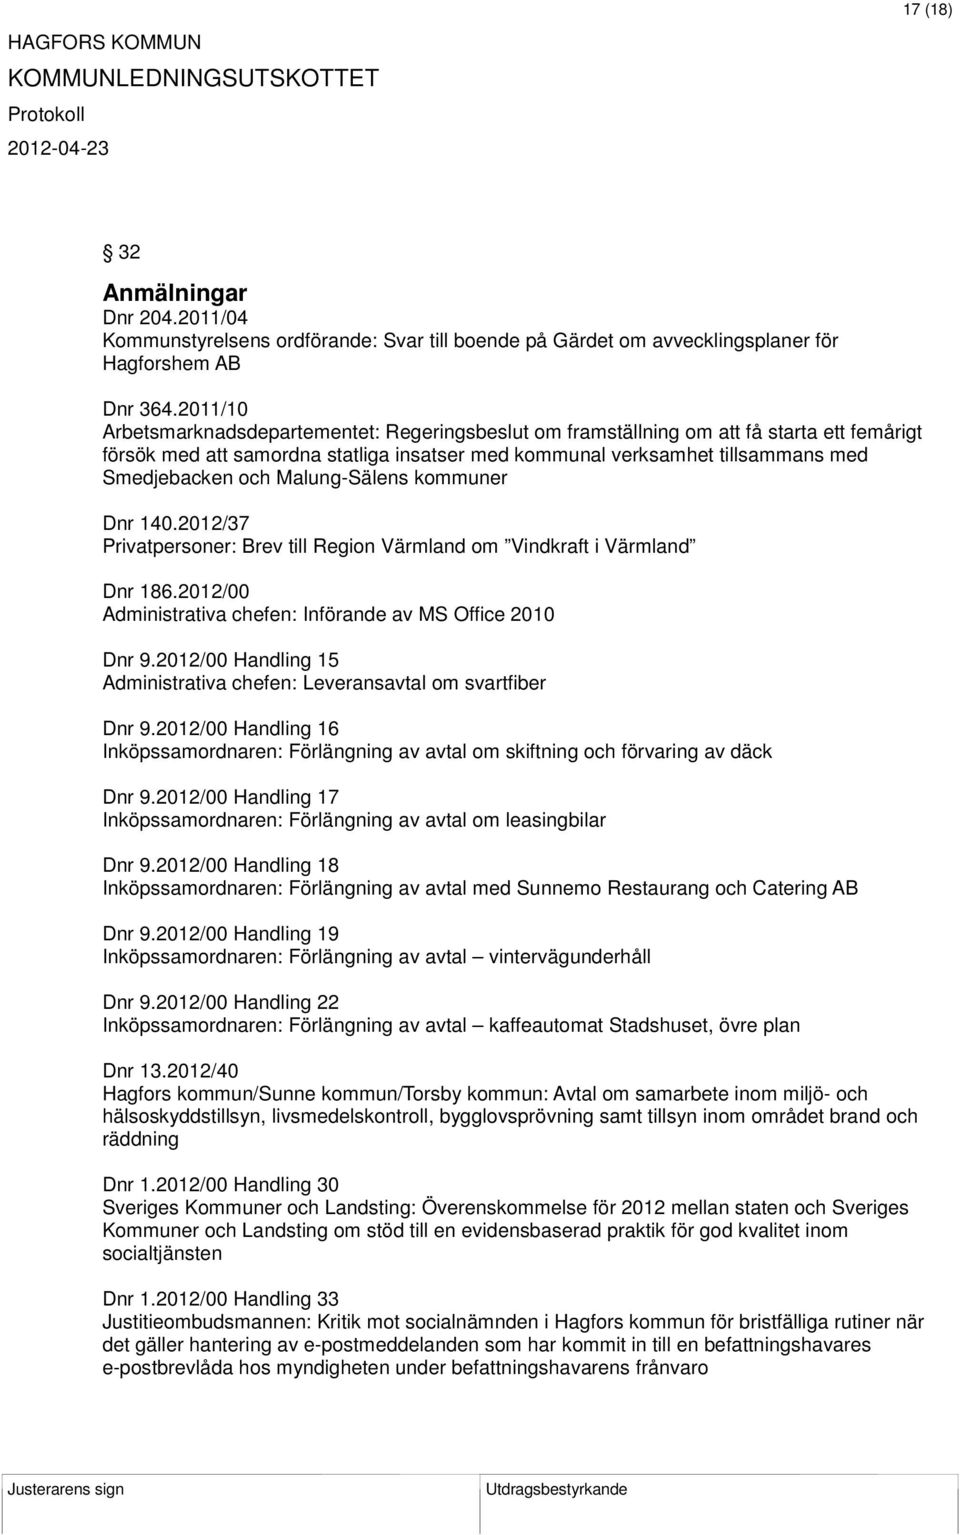 Malung-Sälens kommuner Dnr 140.2012/37 Privatpersoner: Brev till Region Värmland om Vindkraft i Värmland Dnr 186.2012/00 Administrativa chefen: Införande av MS Office 2010 Dnr 9.